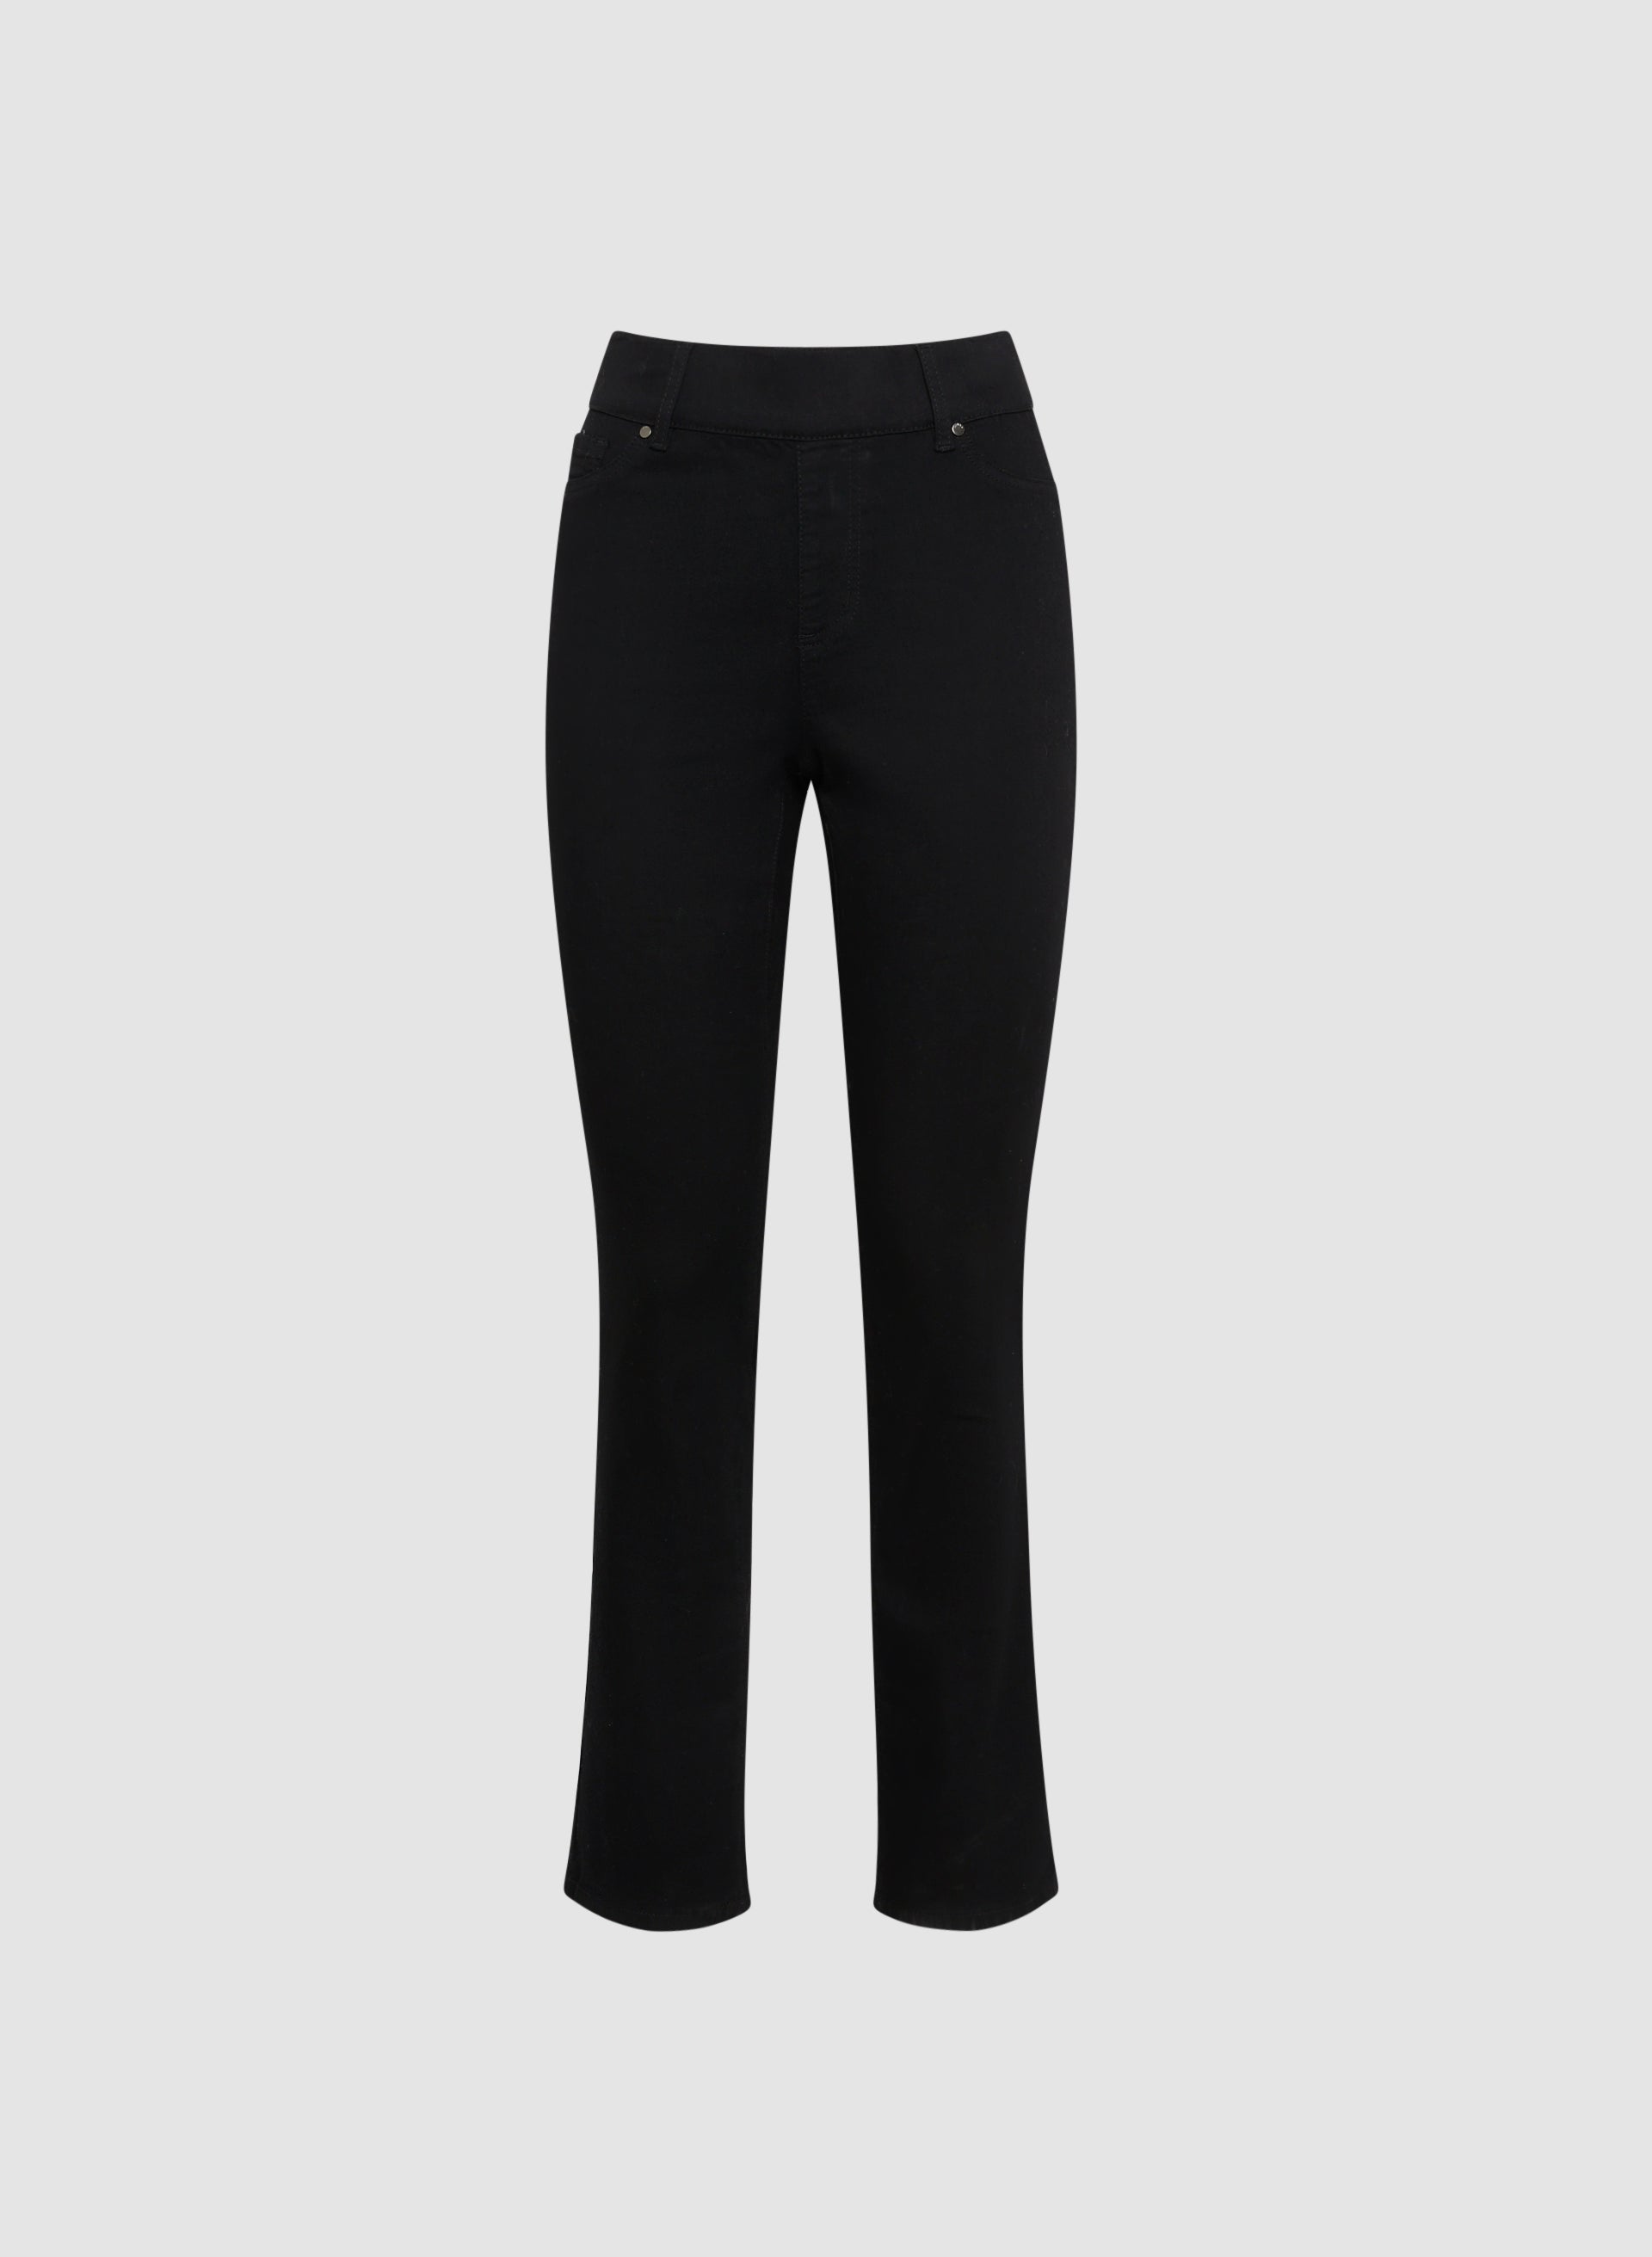 Buy 32 Degrees women pull on plain straight leg pants black Online